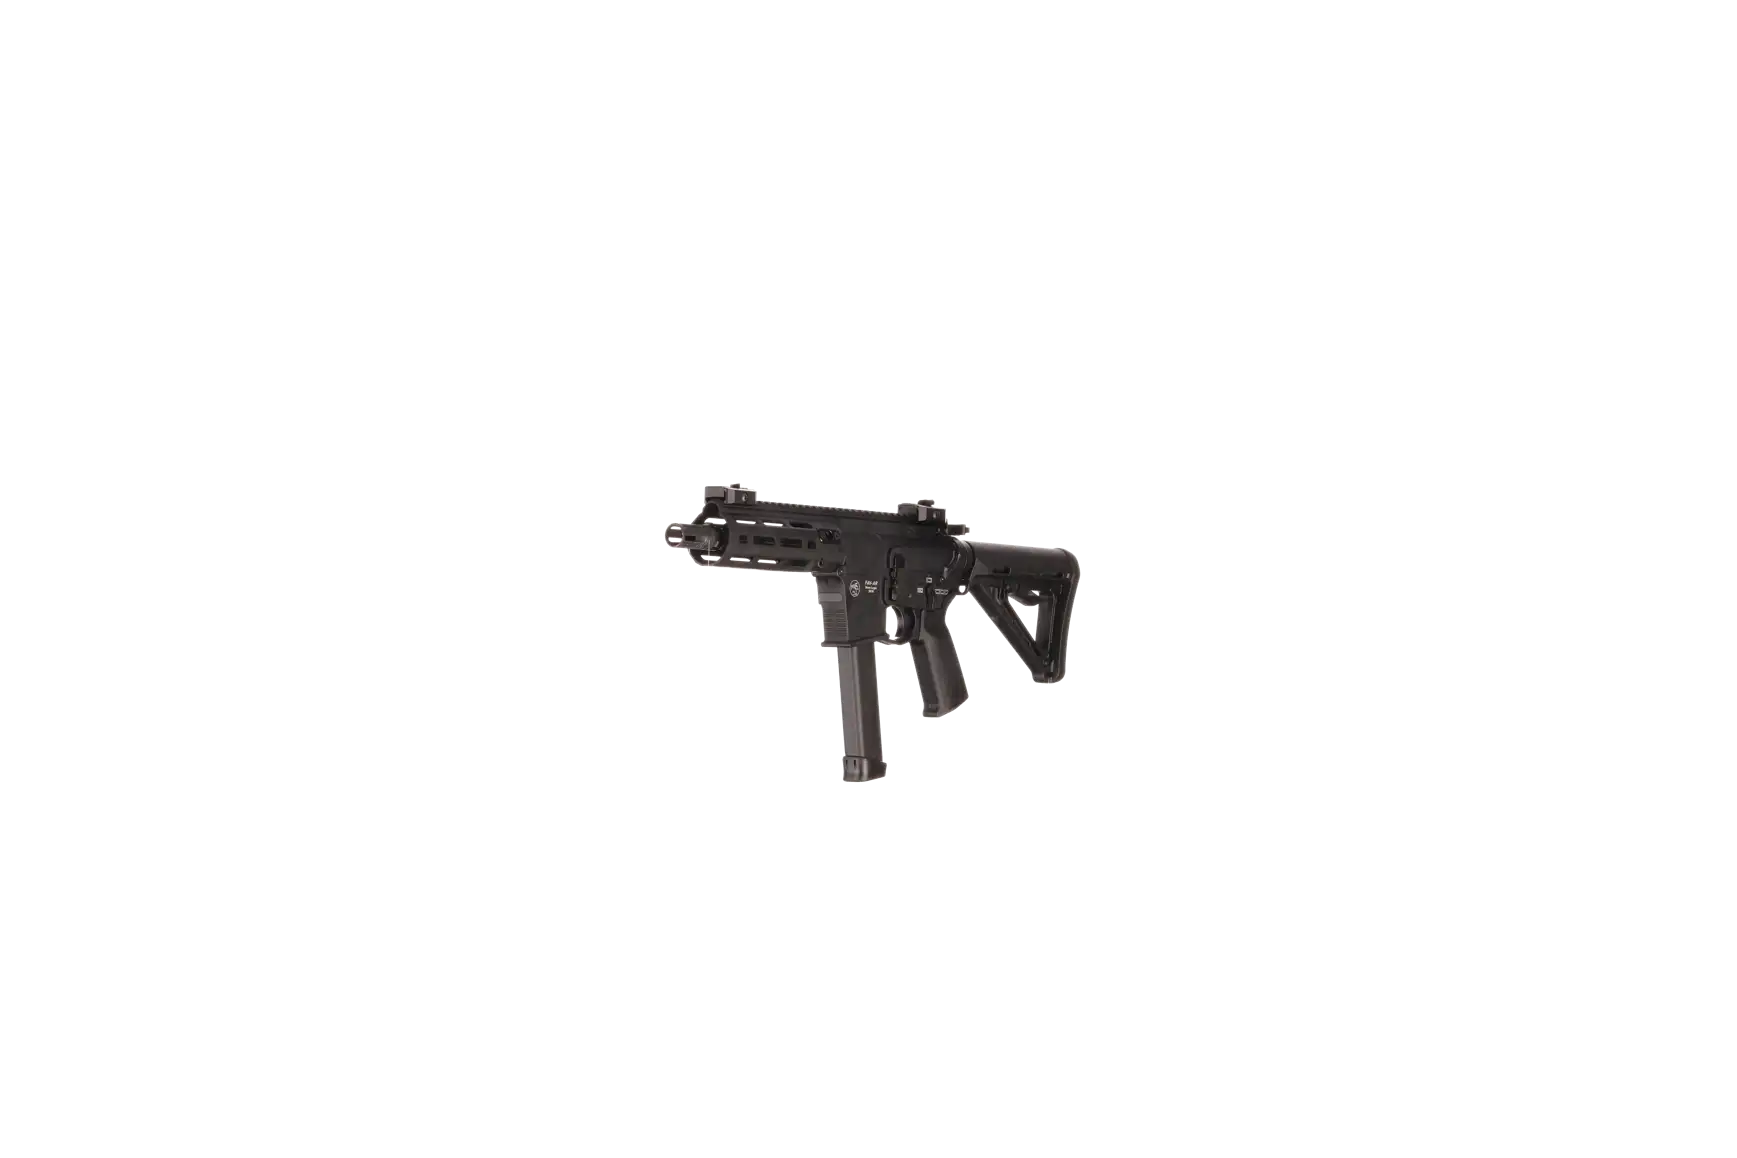 Náhledový obrázek pušky V-AR 9mm luger SPINVIEW 1 R26